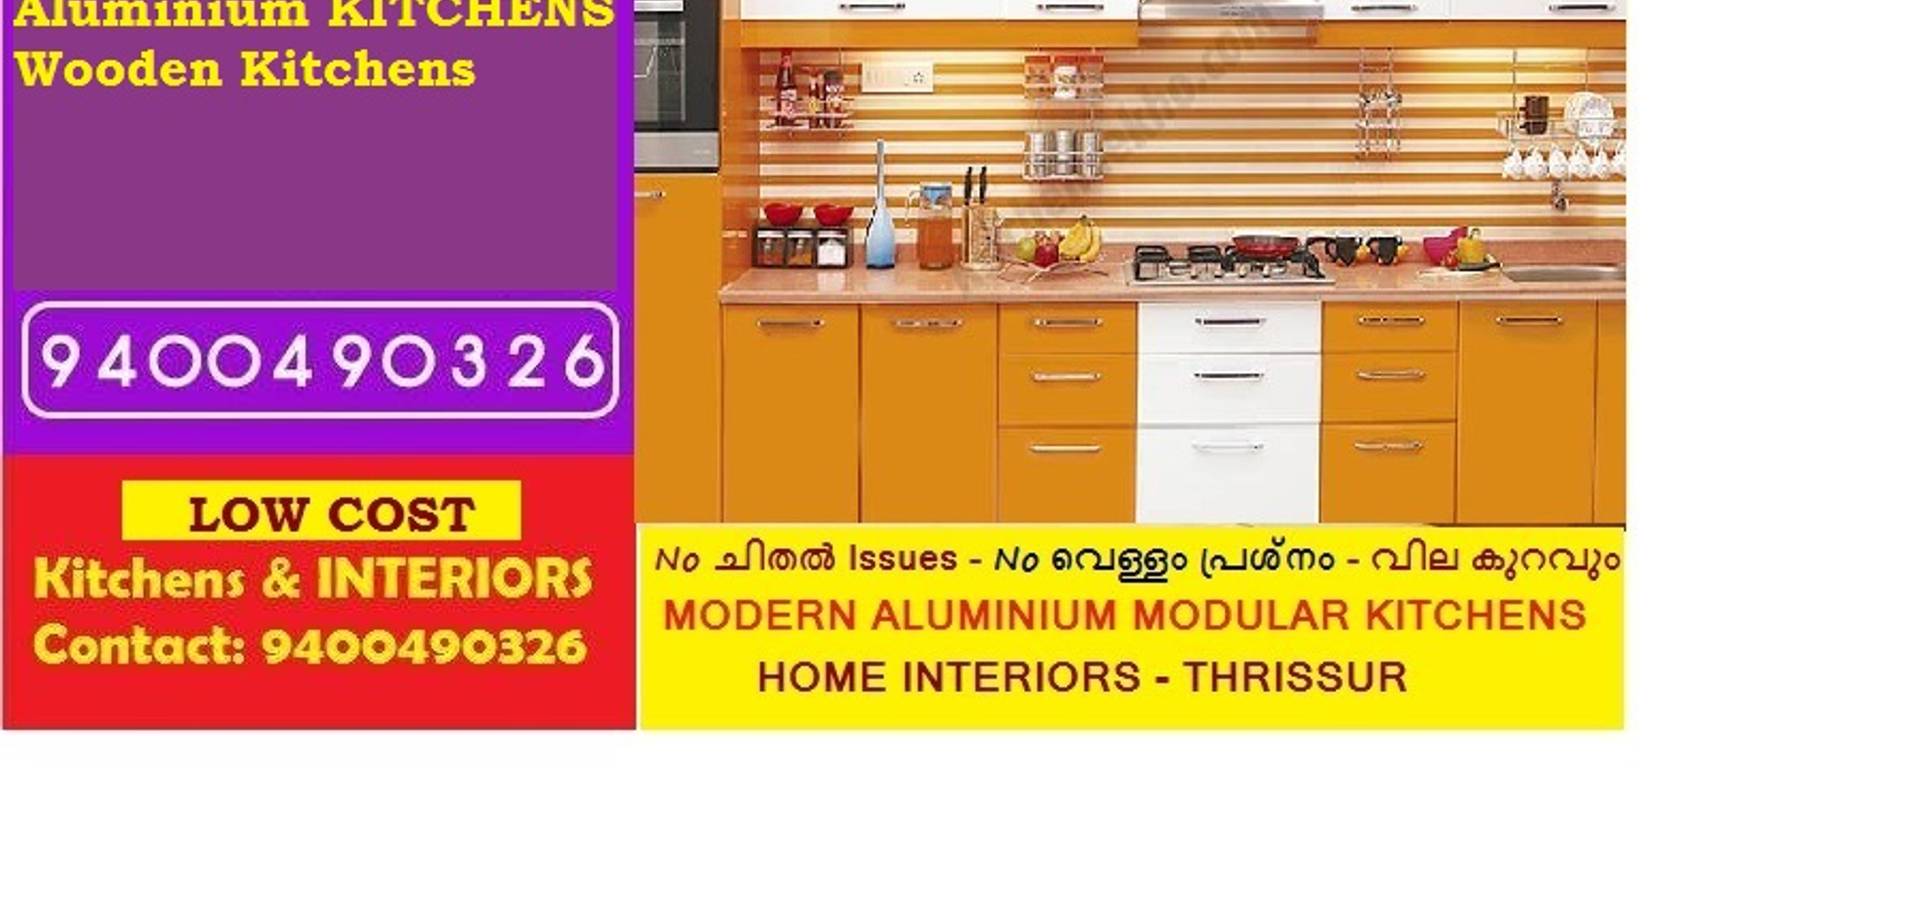 Bangalore ALUMINIUM MODULAR KITCHEN BANGALORE – LOW COST- PH 9400490326